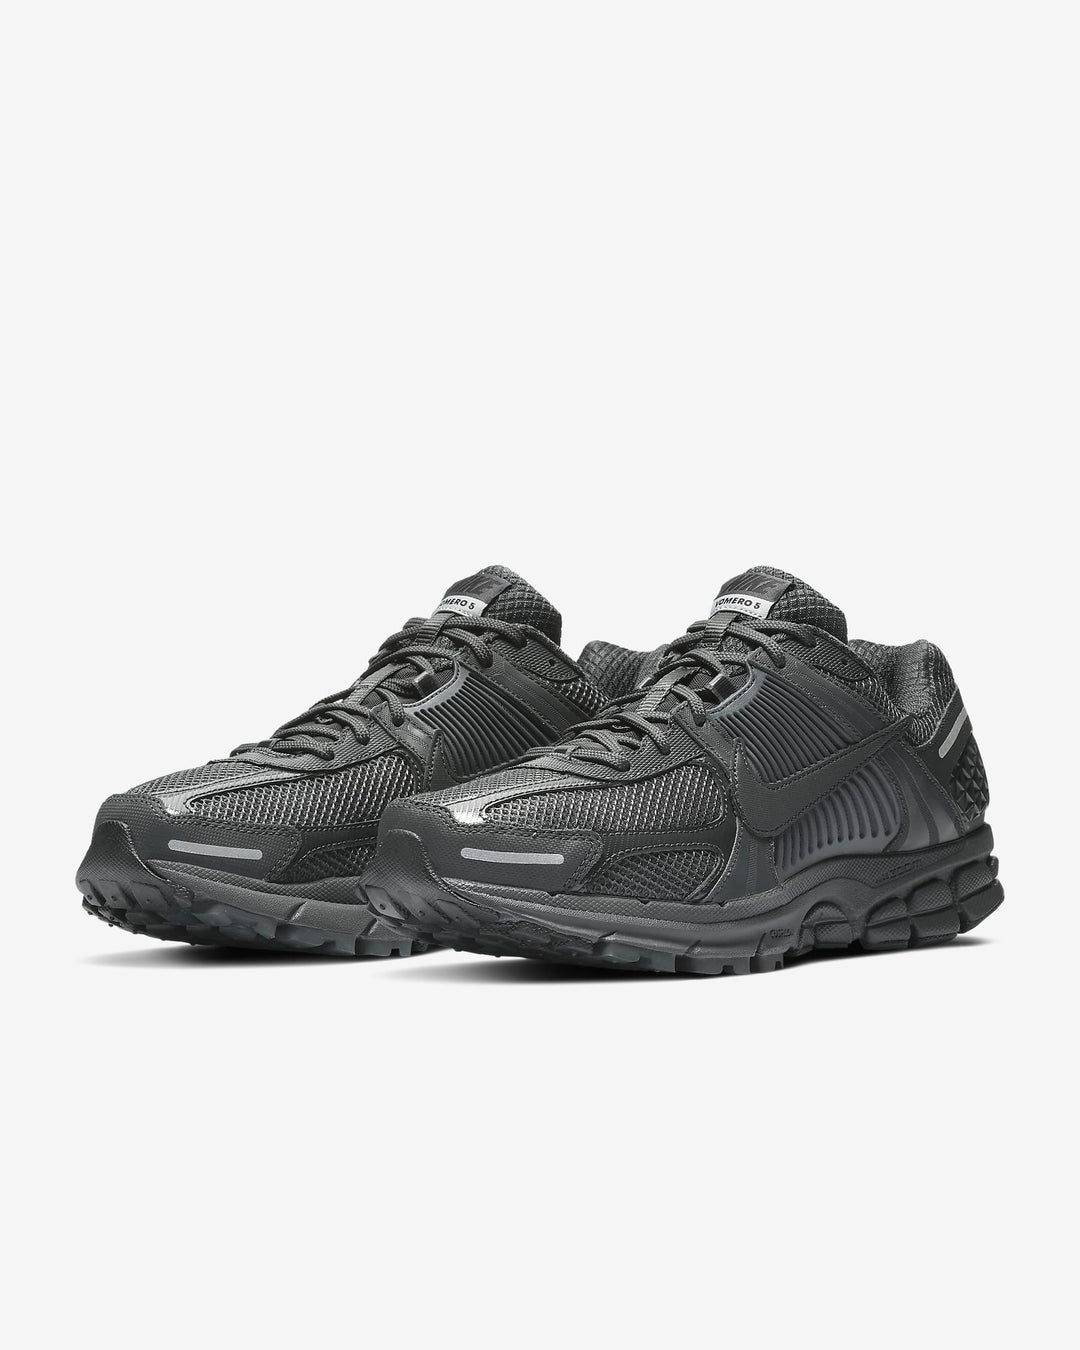 Giày Nike Zoom Vomero 5 Men Shoes #Anthracite - Kallos Vietnam